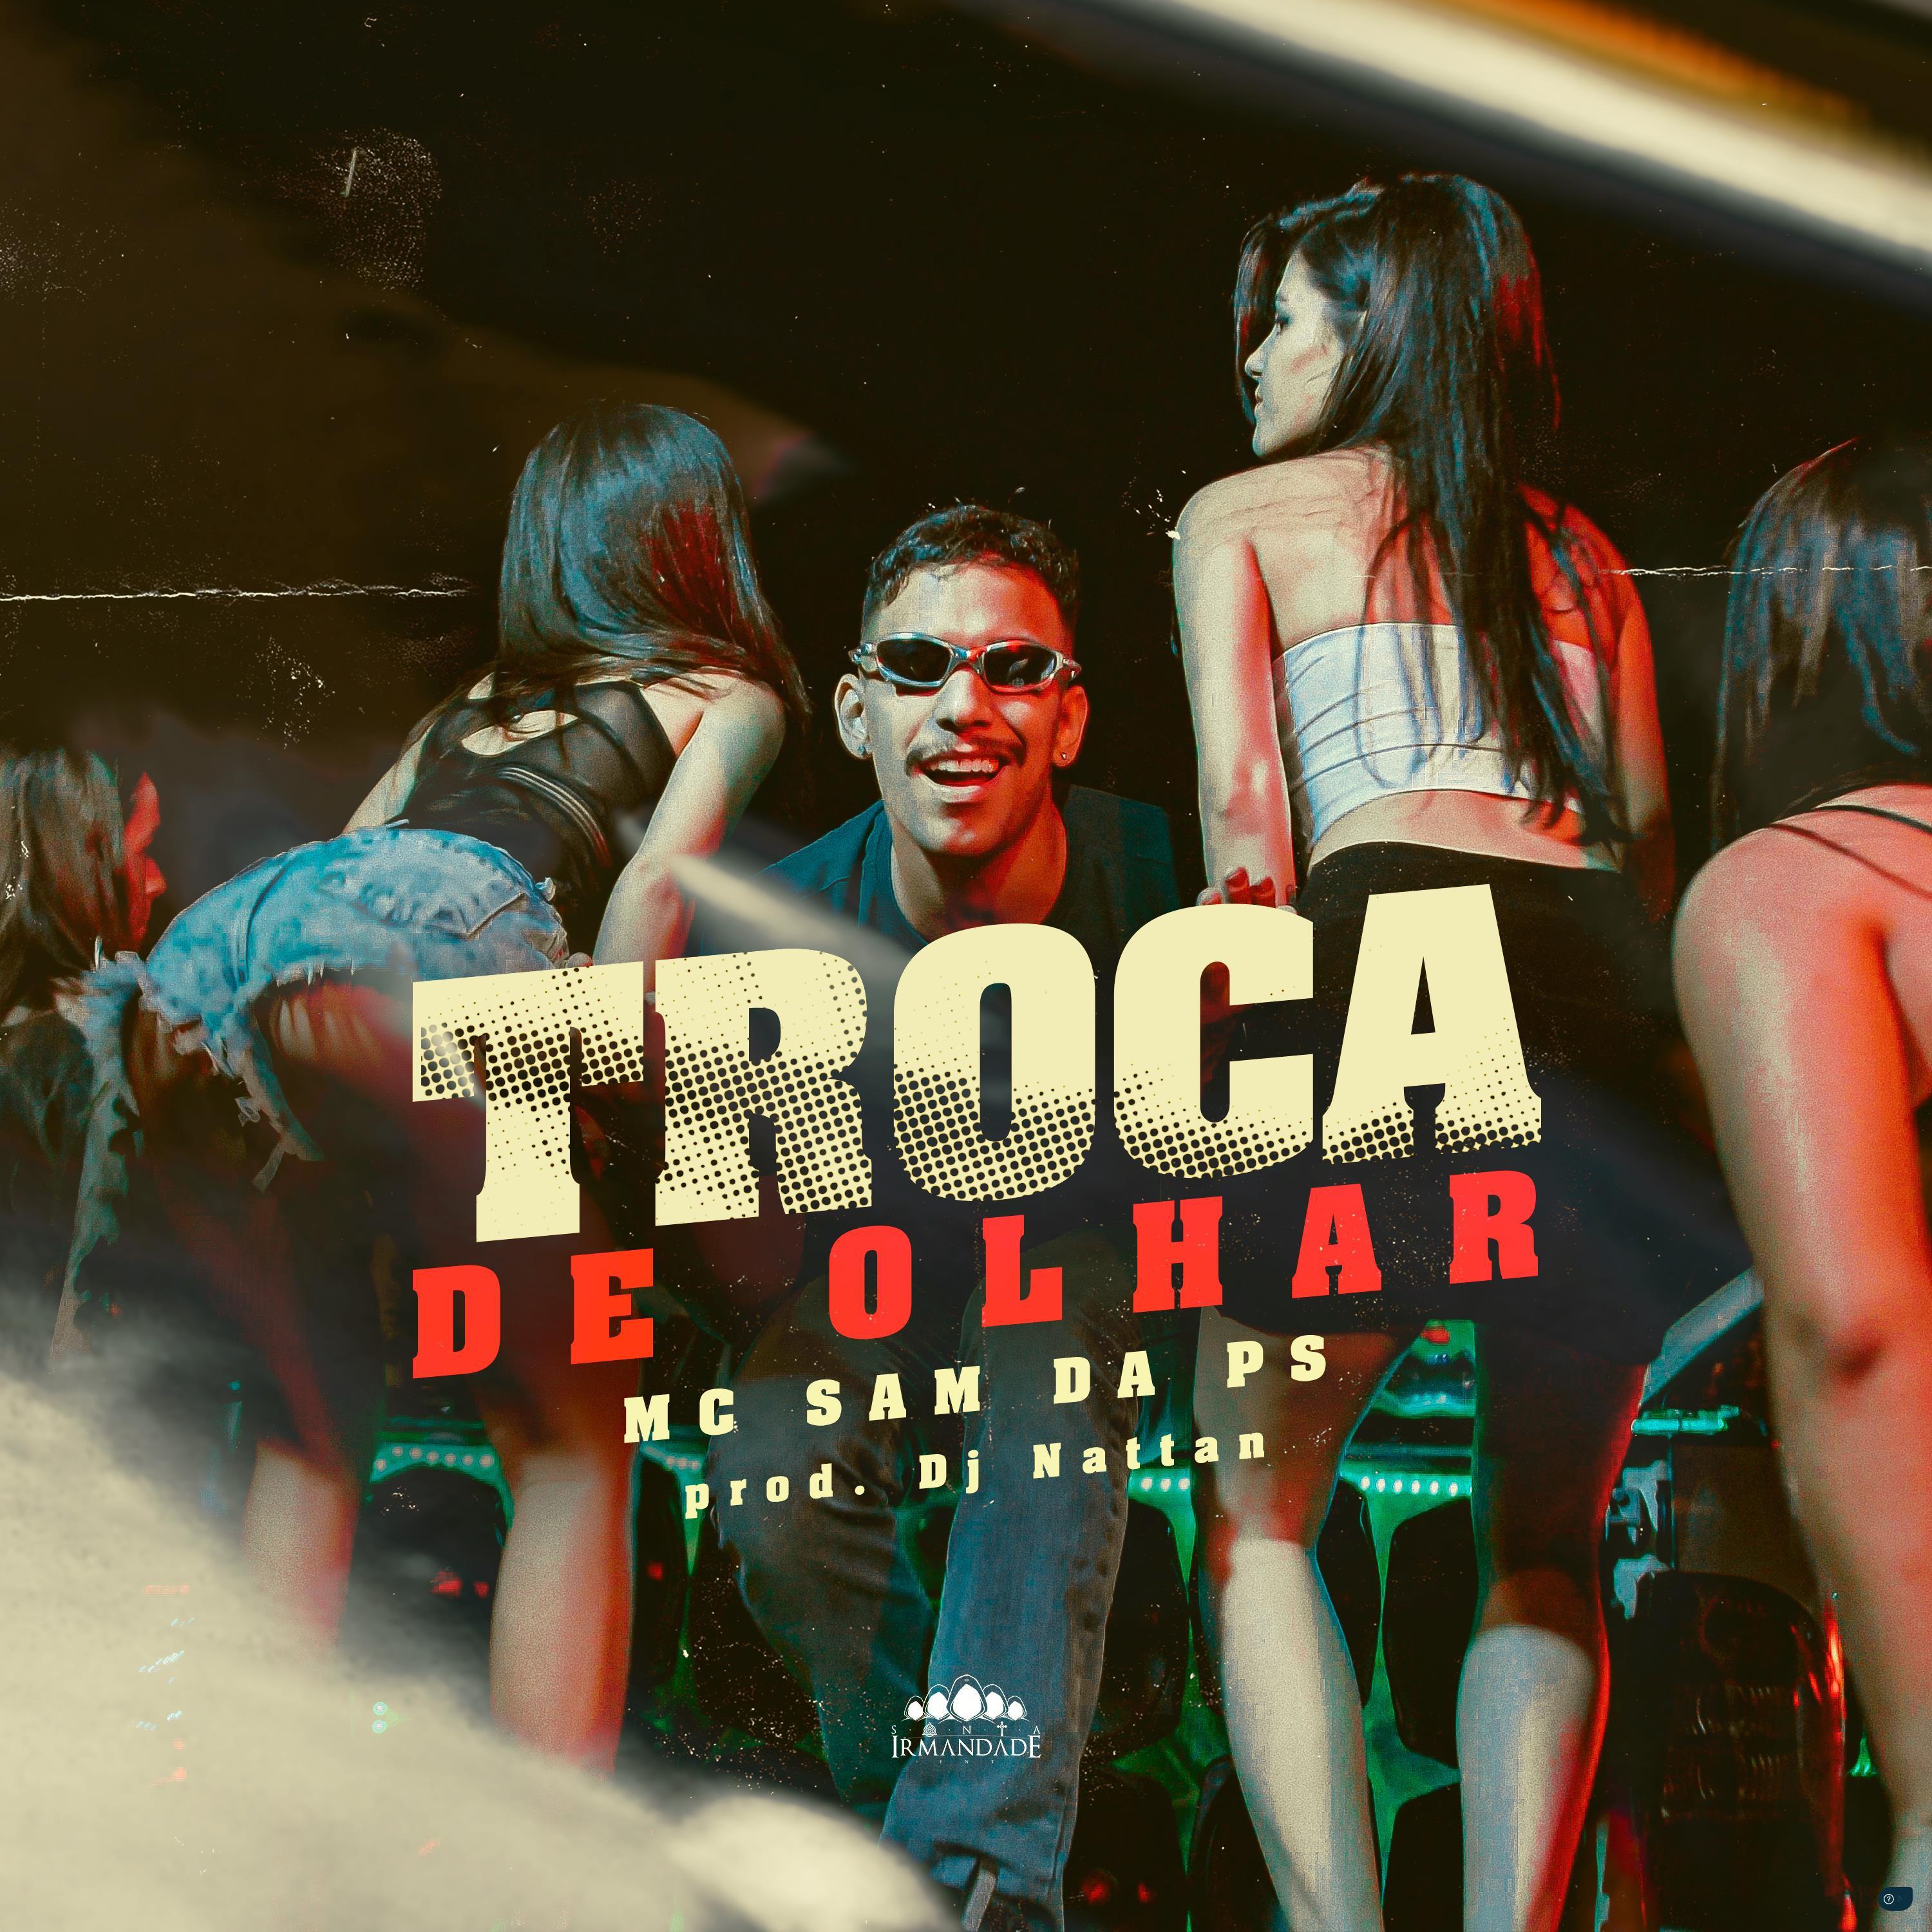 MC Sam Da PS - Troca de Olhar (feat. Dj Nattan)